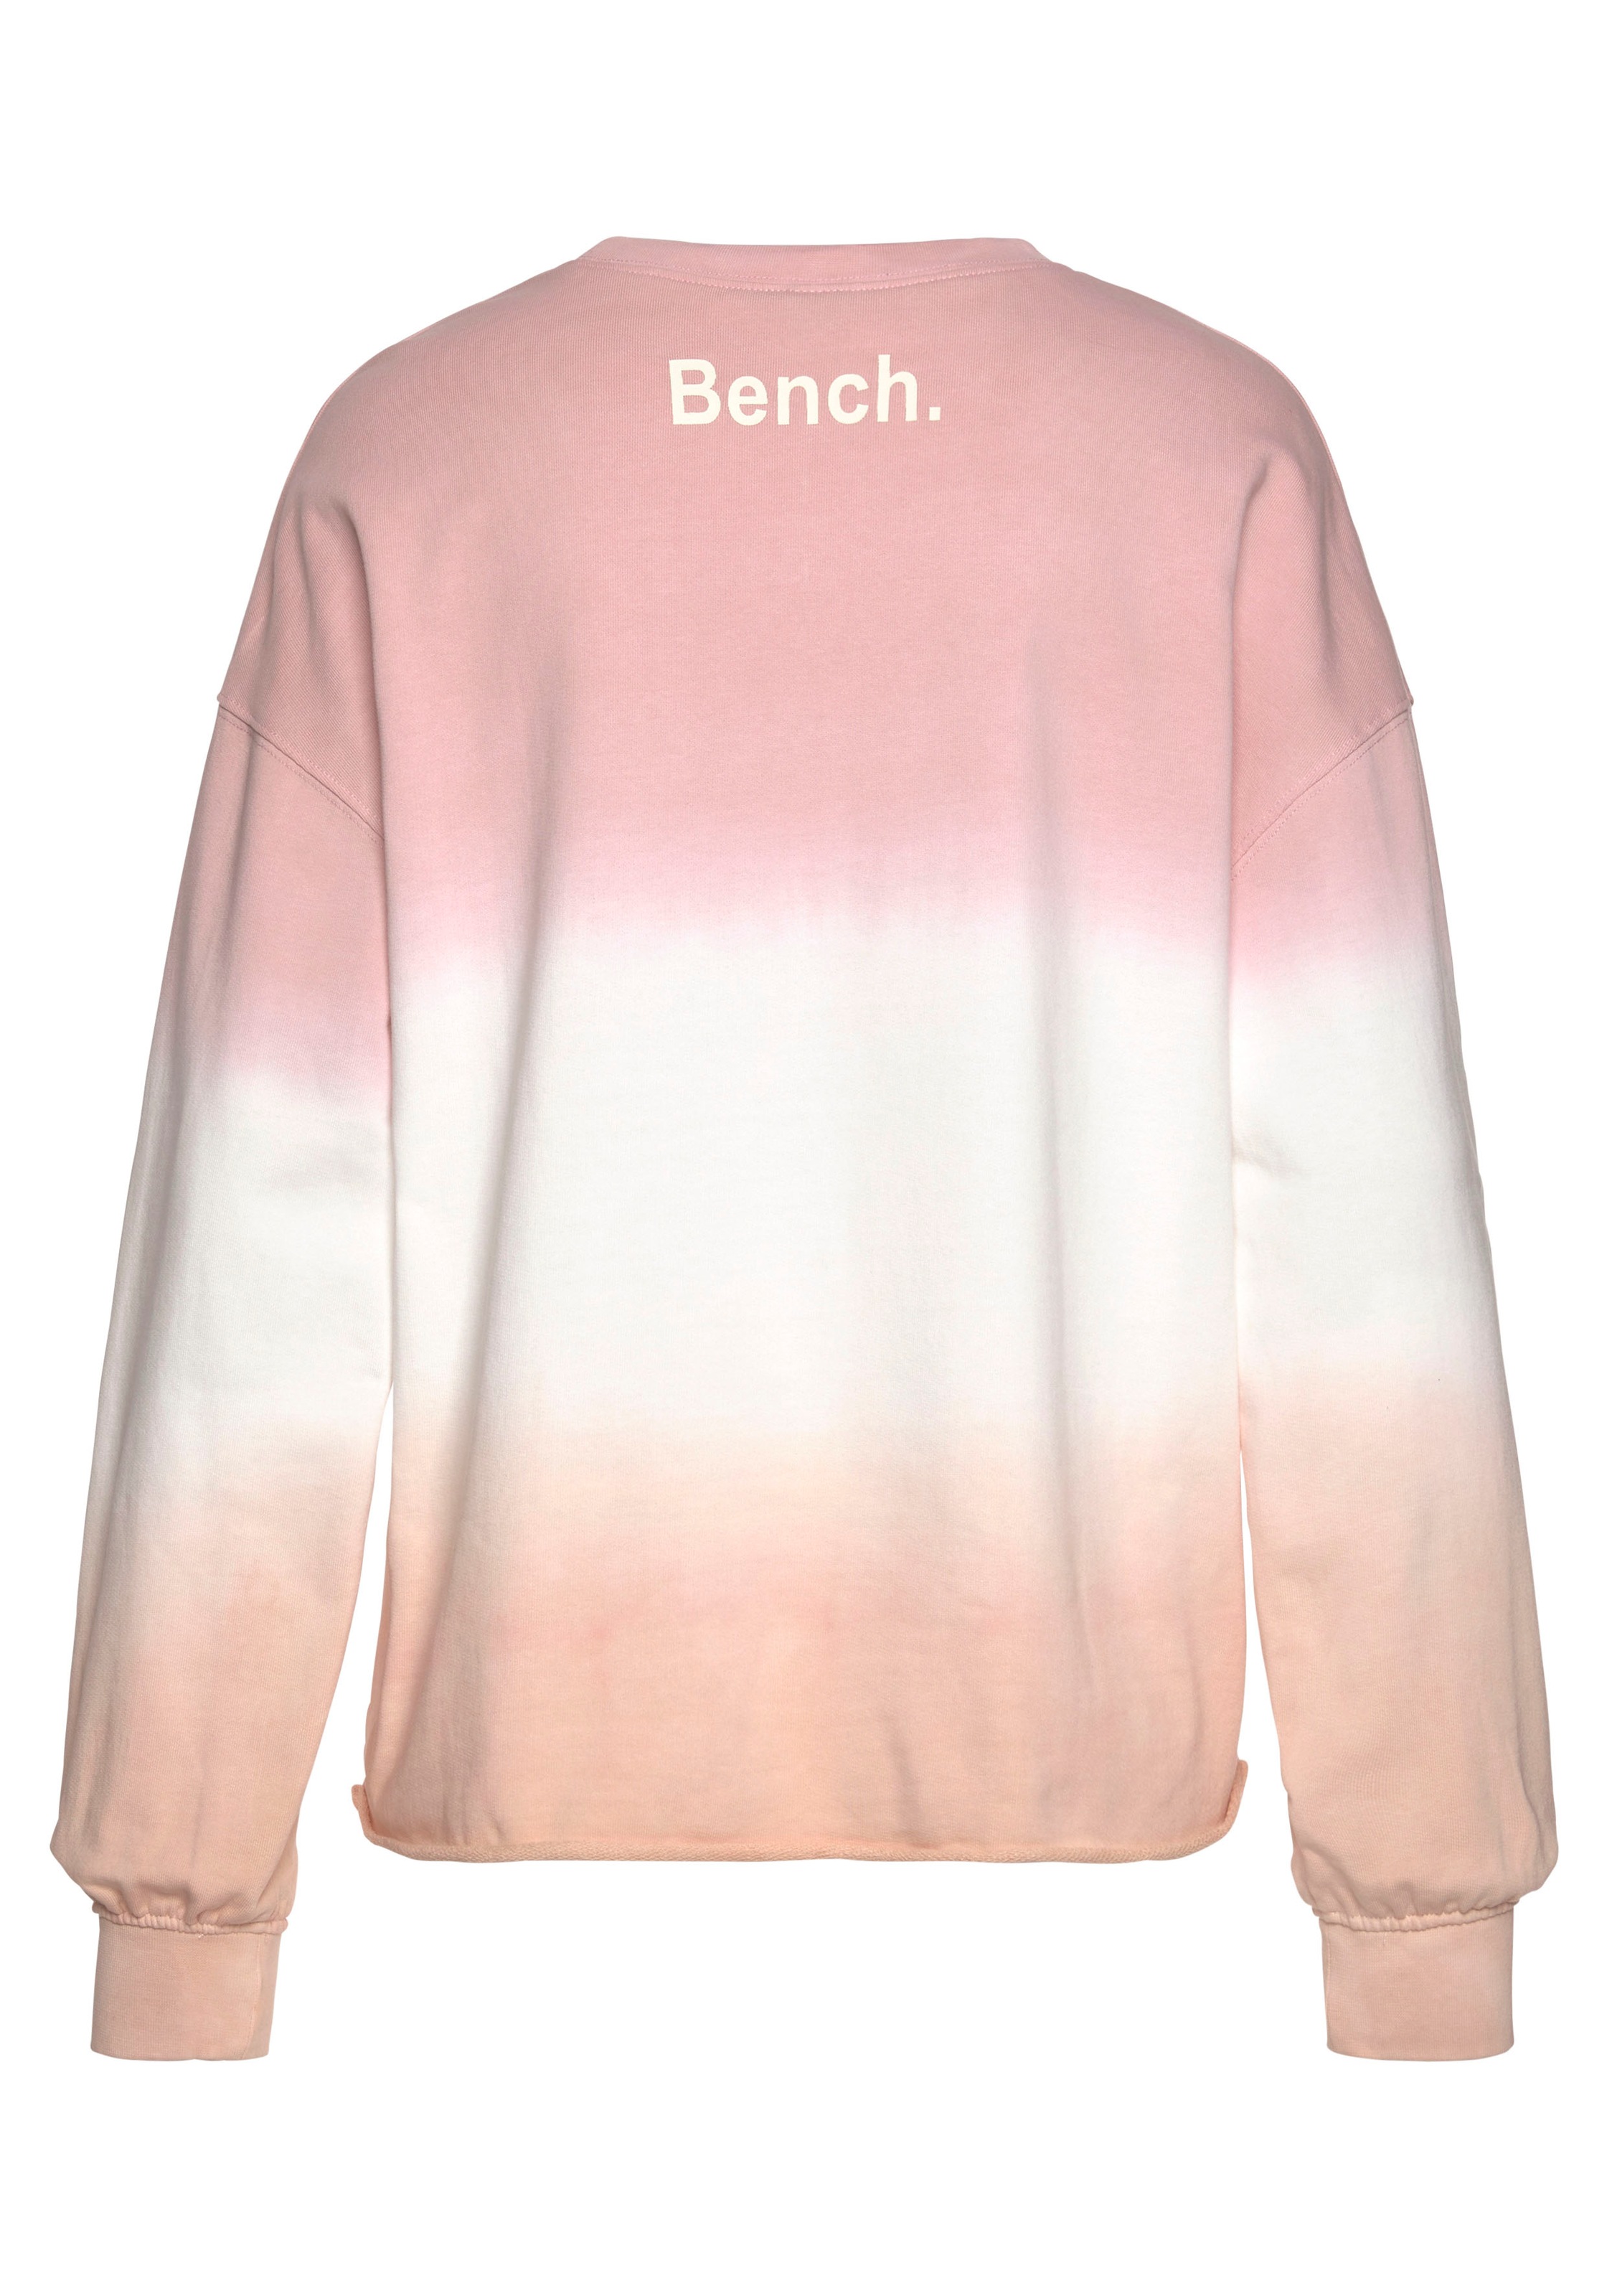 Sweatshirt, mit Bench. ♕ Farbverlauf bei